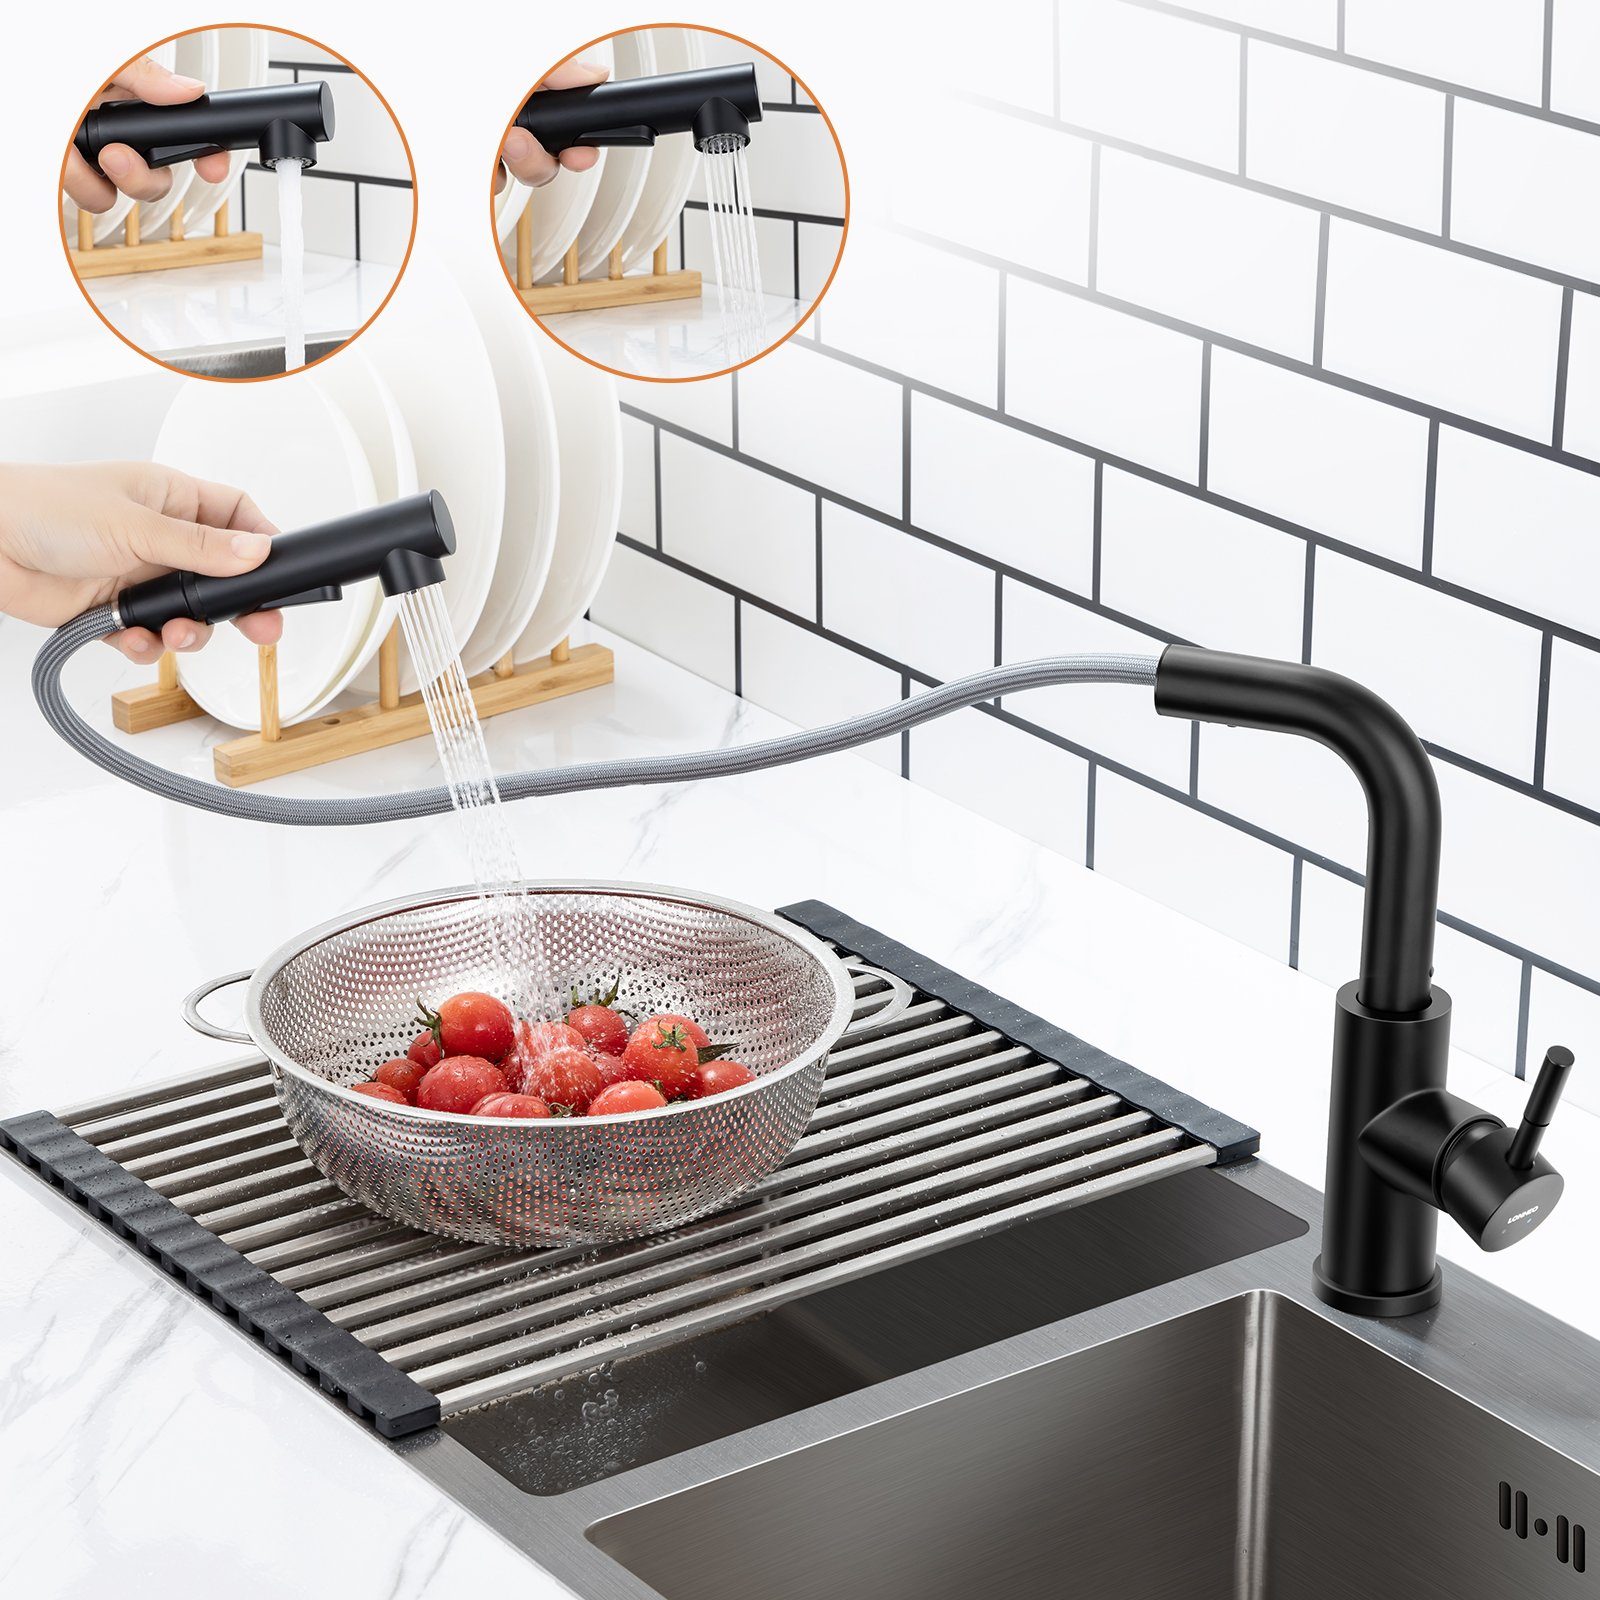 Lonheo Küchenarmatur Küche Wasserhahn Ausziehbar Spültischarmatur Küchenarmatur Brause 360° Drehbar,Schwarz mit